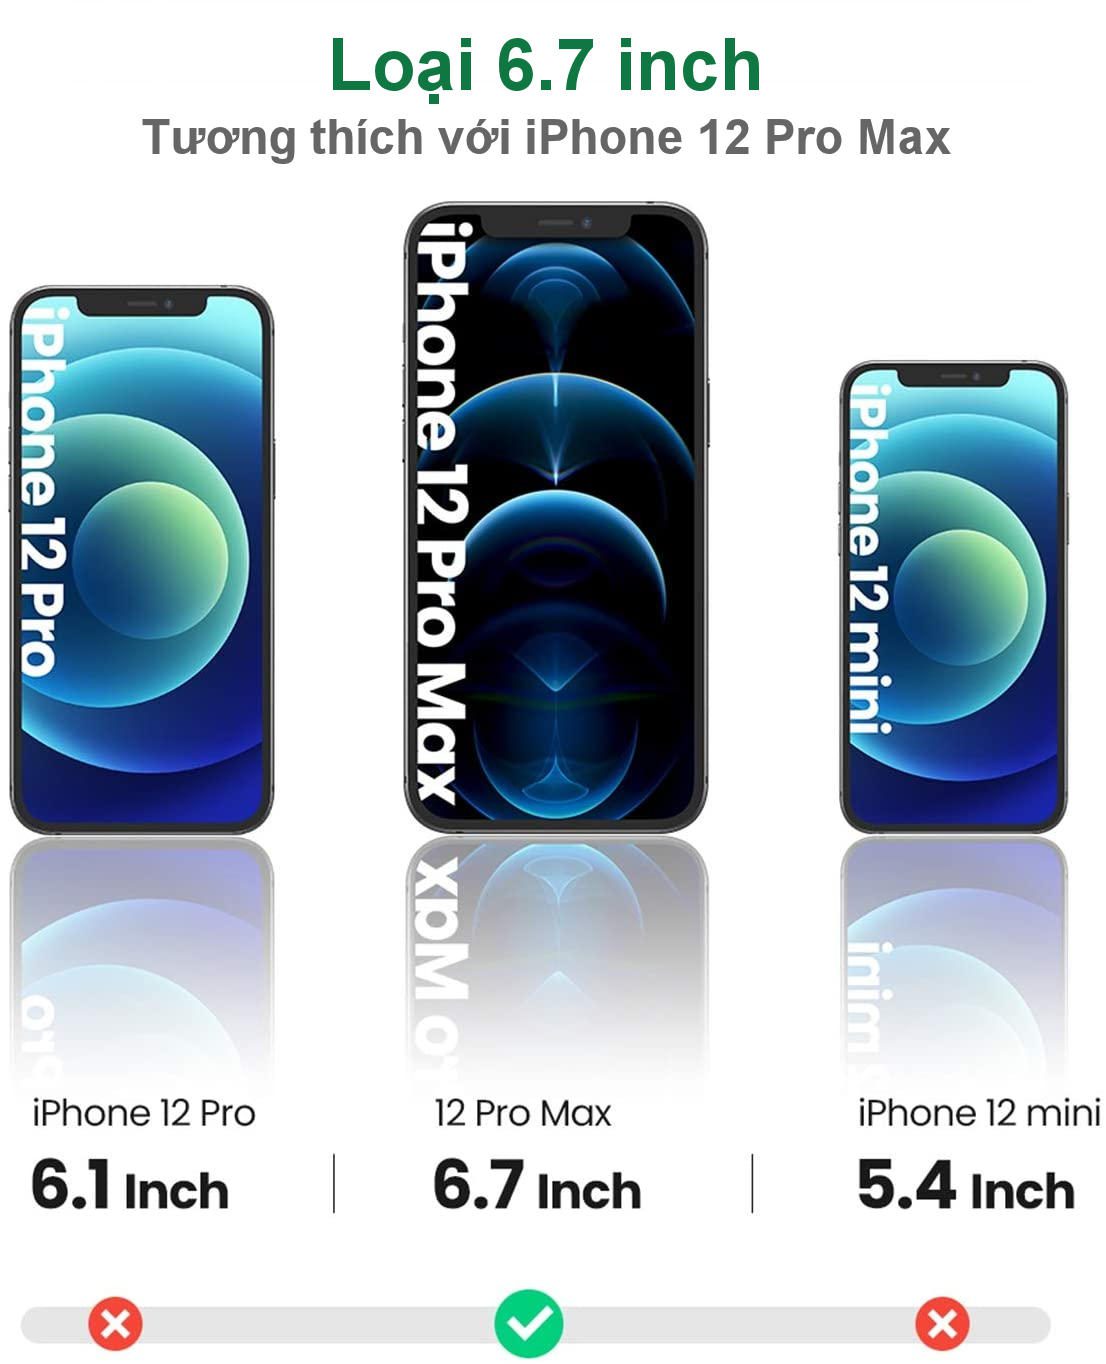 Miếng dán kính cường lực ánh sáng xanh chống lóa mắt độ cứng 9H cho iPhone 12 mini / 12/Pro / Pro Max loại tương ứng 5.4 inh / 6.1 inch / 6.7 inch UGREEN SP158 SP159 SP161 (2-Pack)